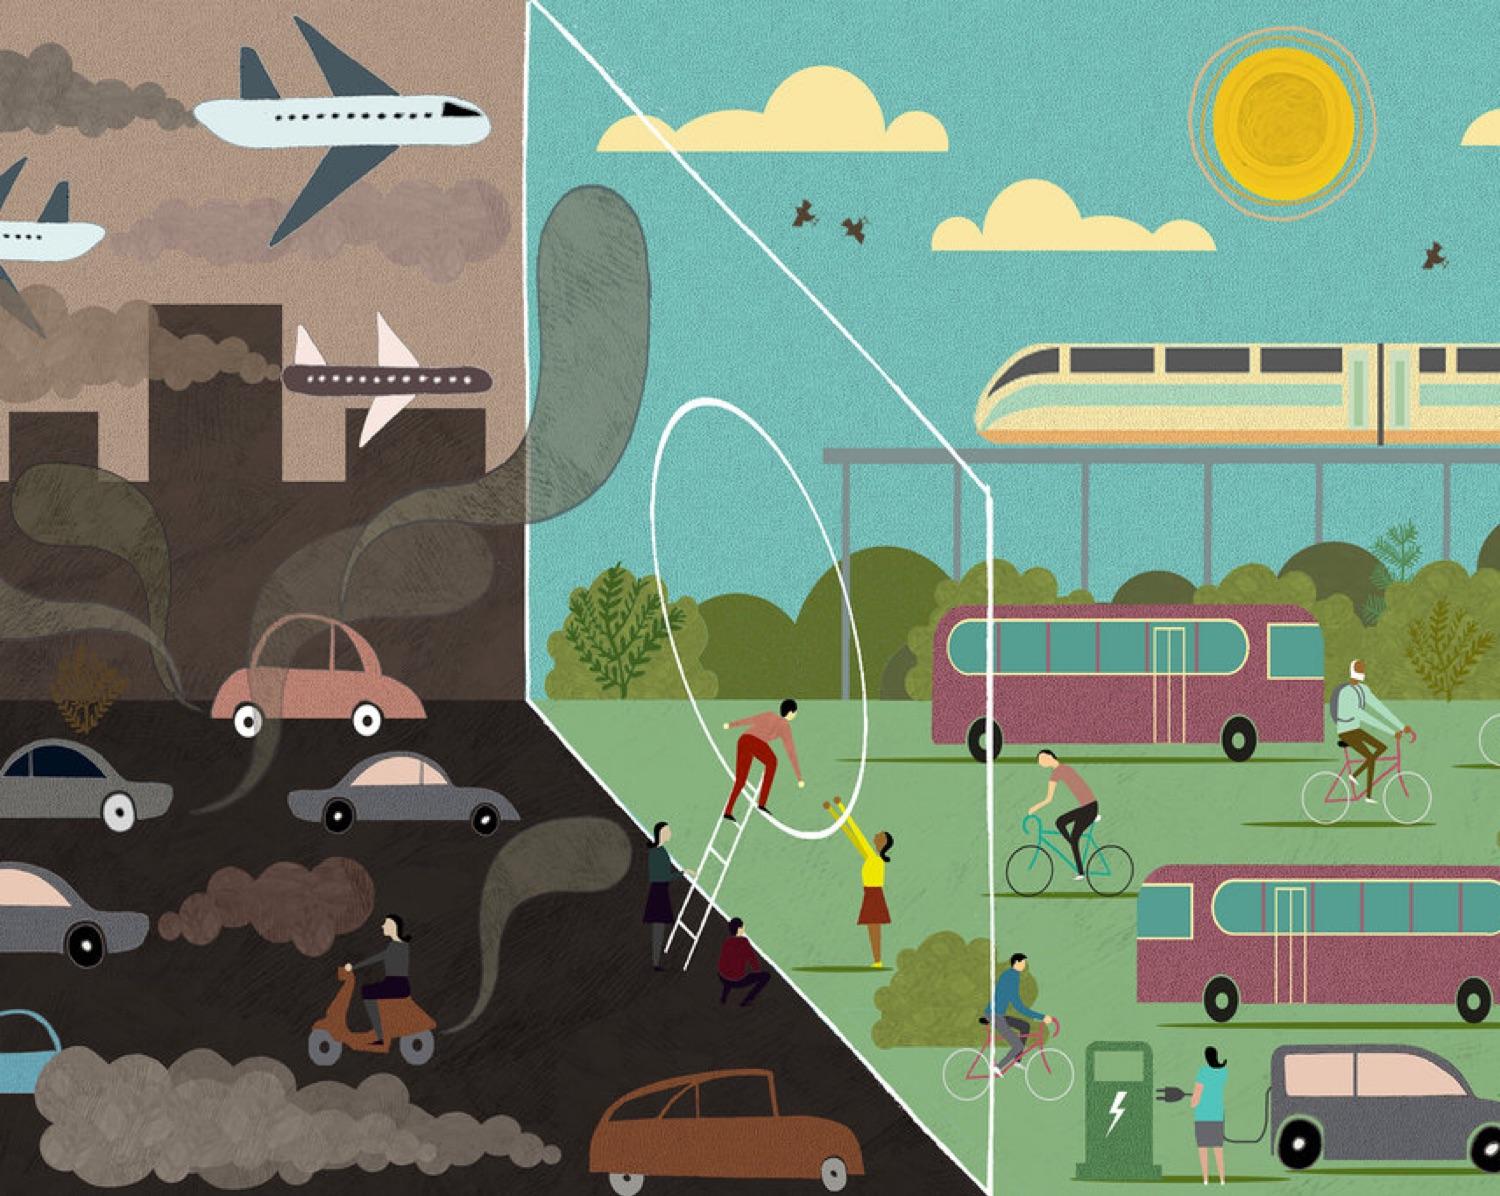 Carbon Footprint: Transportation